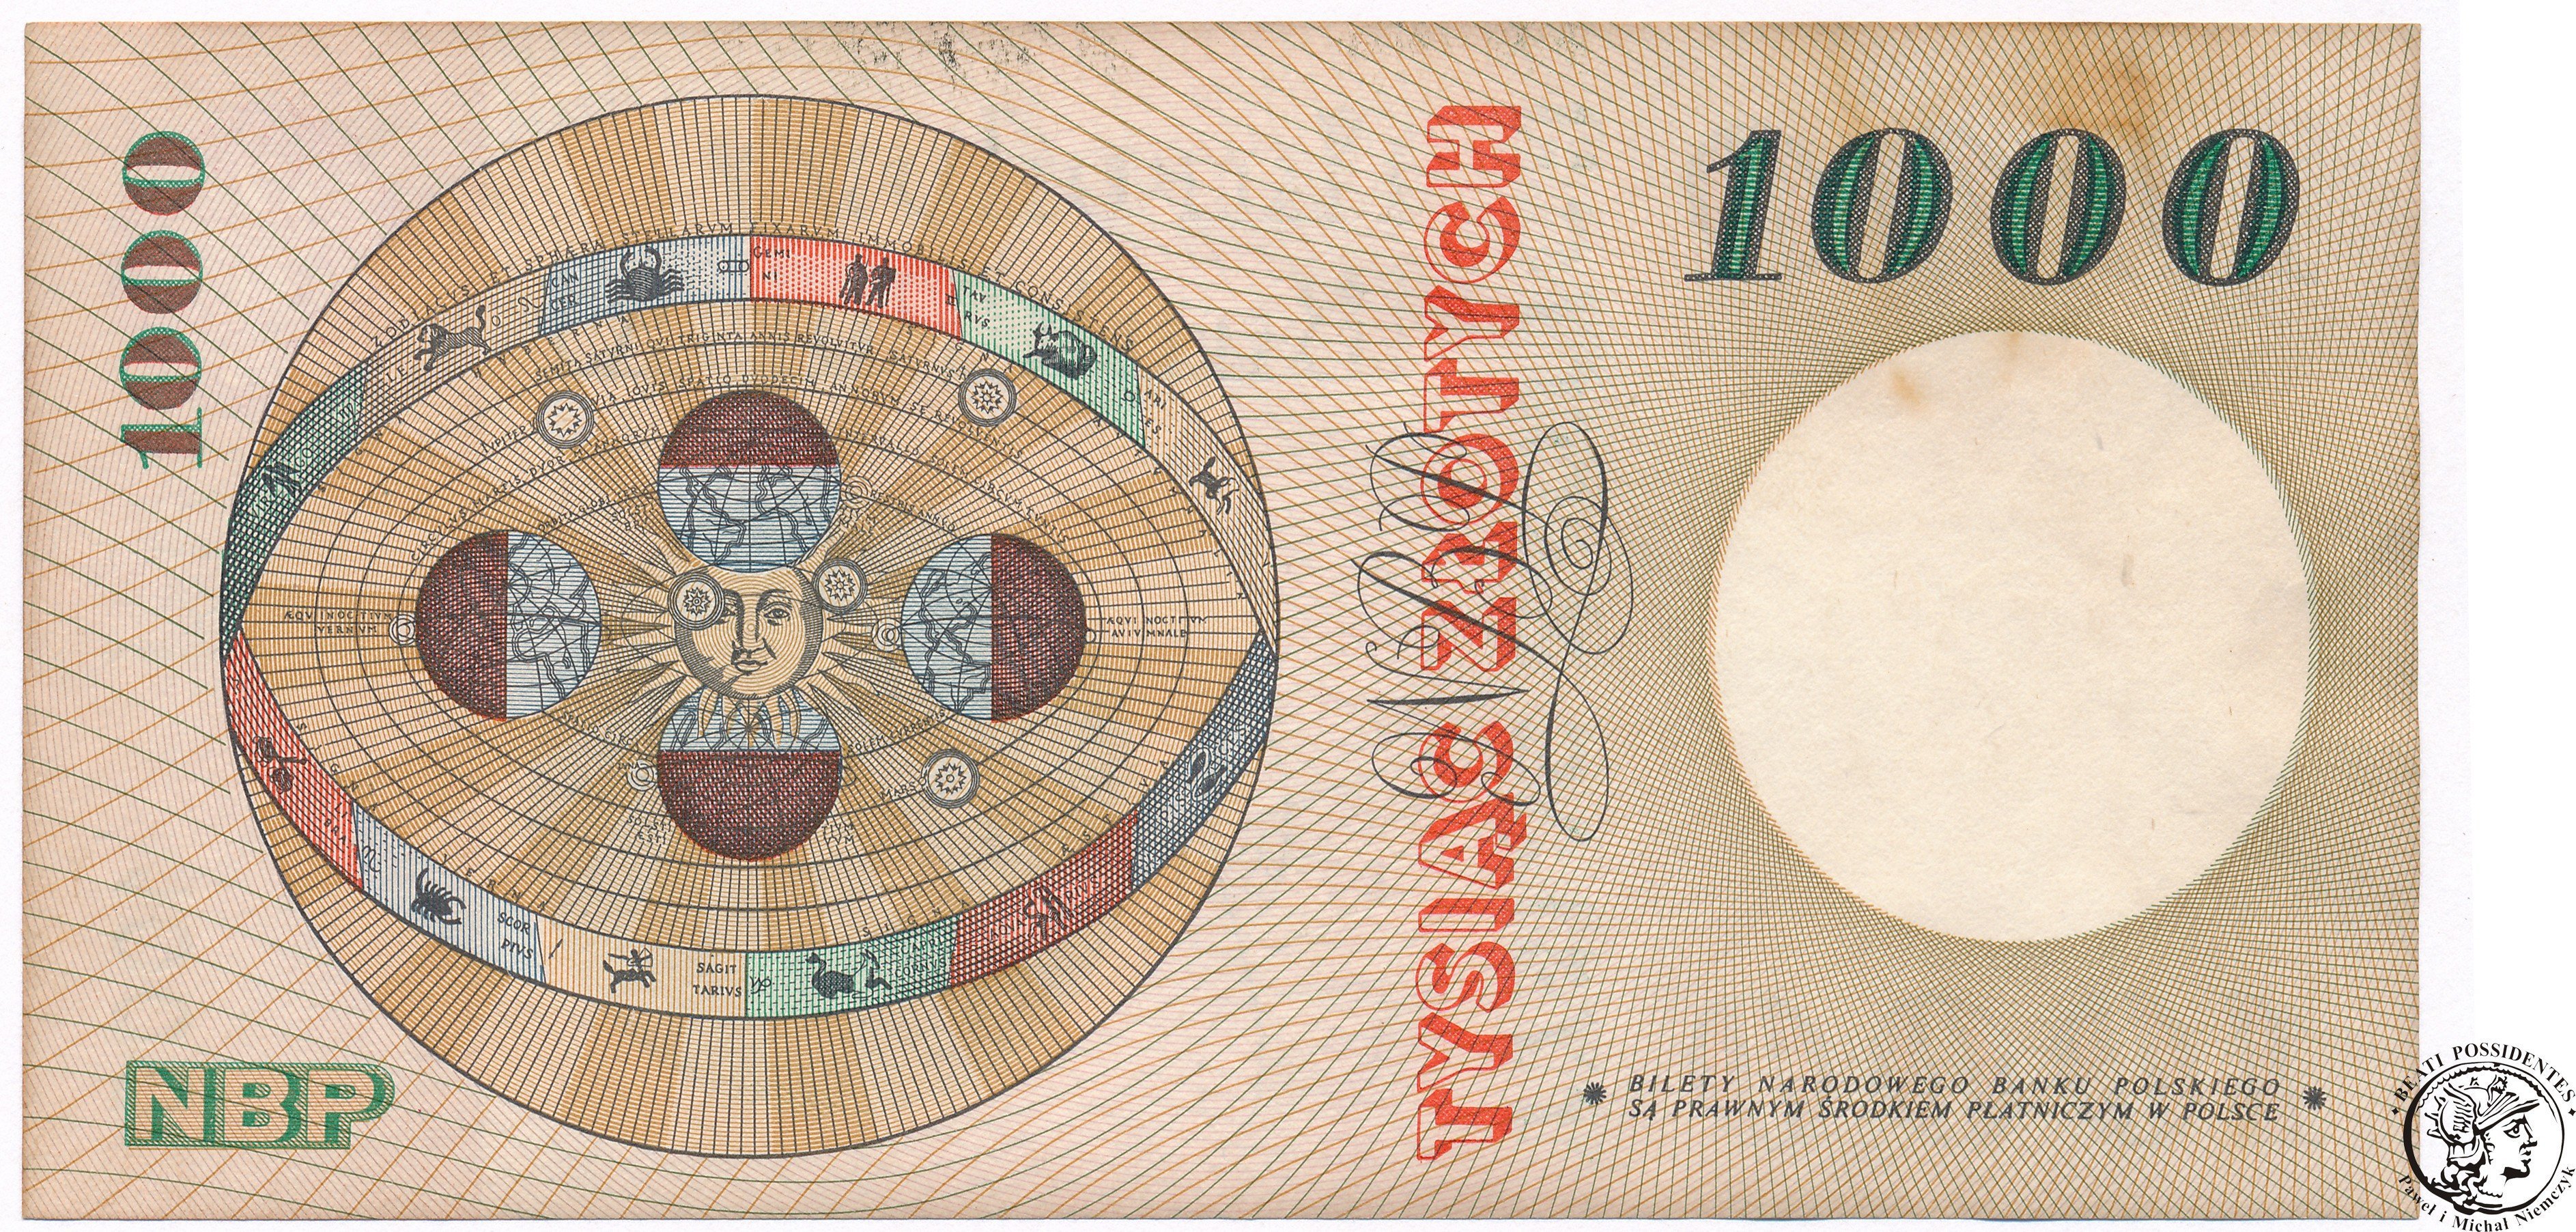 Banknot 1000 złotych 1965 Kopernik seria D 